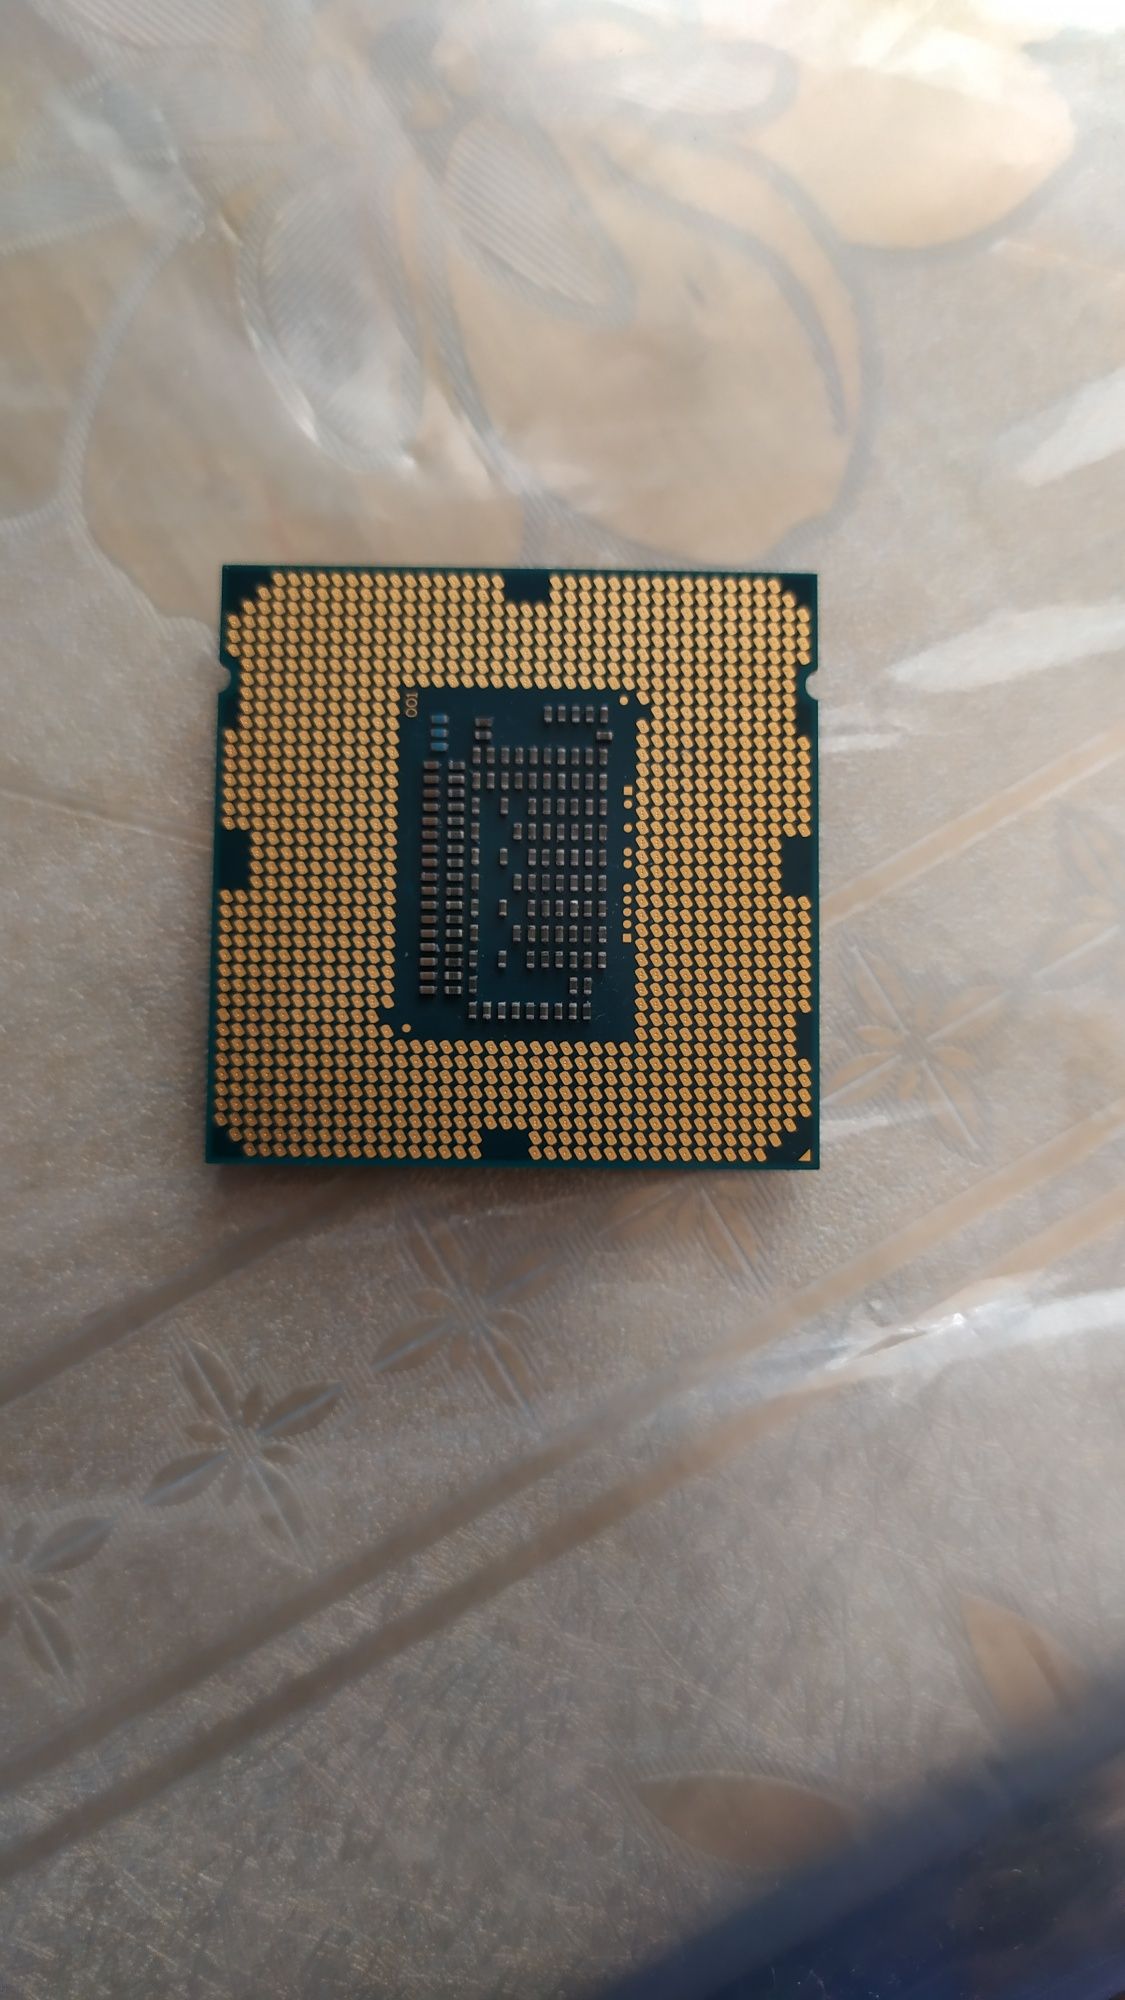 Процессор i5 3350p продаю и можно обменять на модем Gpon